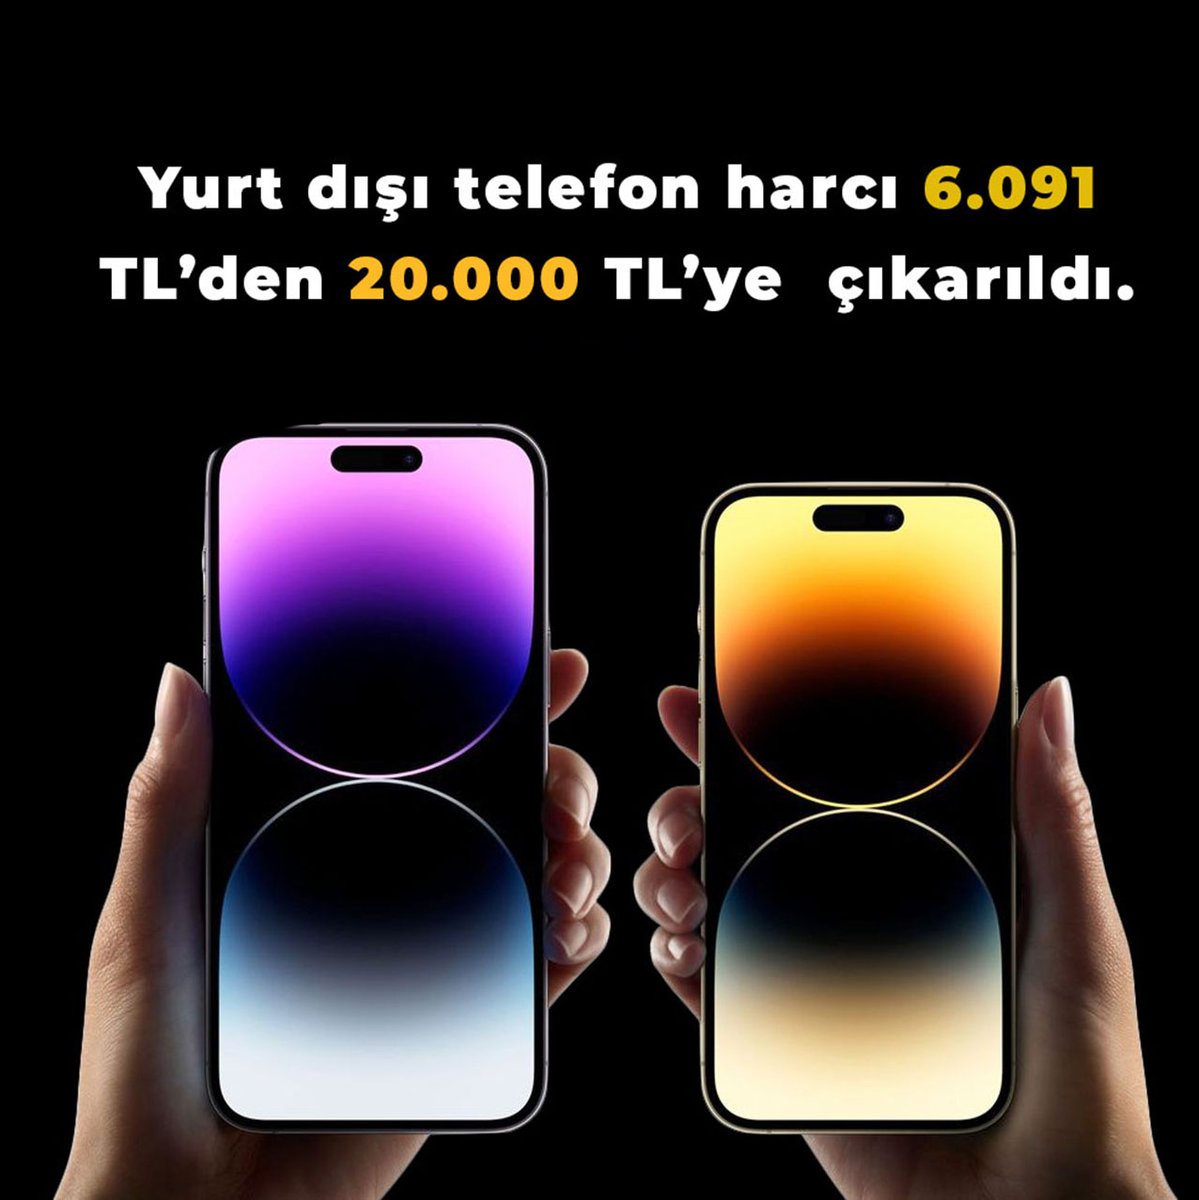 Yurt dışı telefon harcı 6.091 TL’den 20.000 TL’ye  çıkarıldı. 

 #tuprs #thyao #bist100 #benzin #Crypto #faiz #borsa #MemurAsgariÜcretliOlamaz #motorin #astor #motorin #şakagibi #KendiDüşenAğlamaz #iPhone ZAM ZAM ZAM